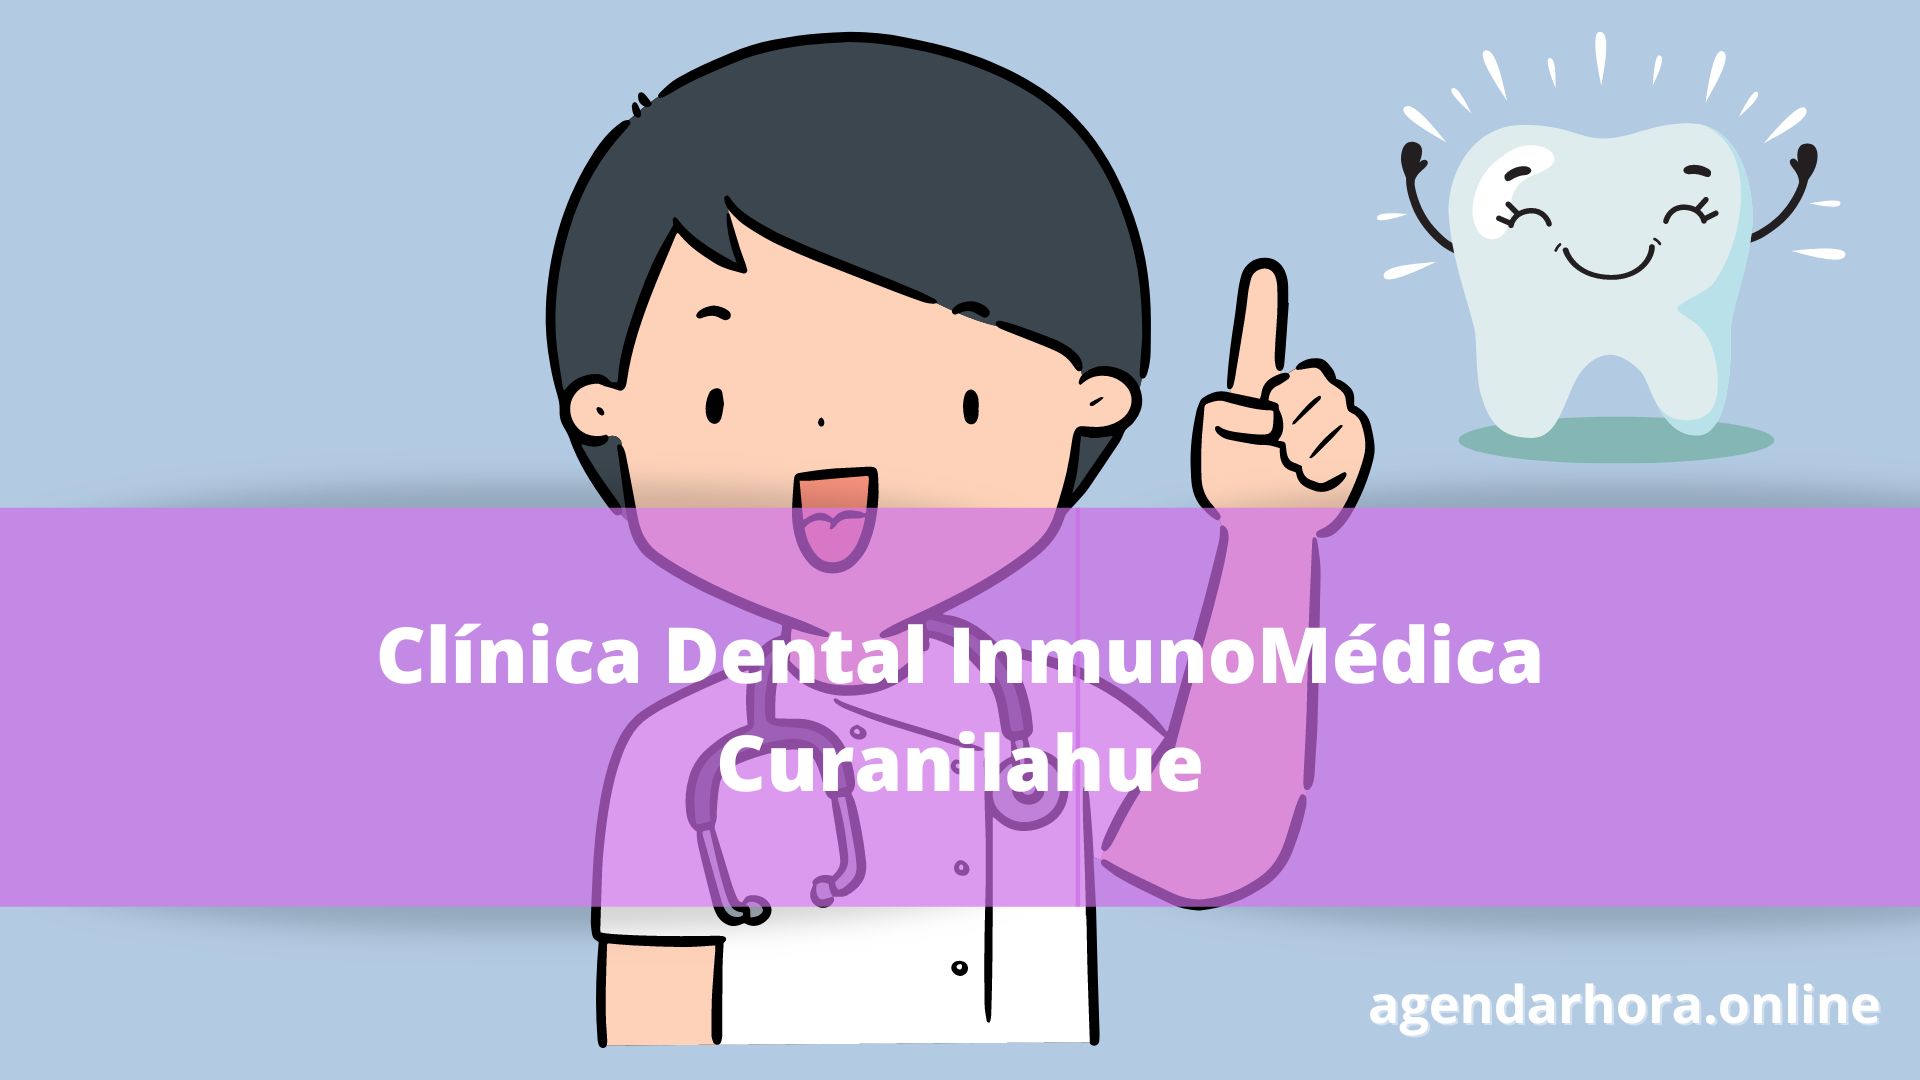 Clínica Dental InmunoMédica Curanilahue